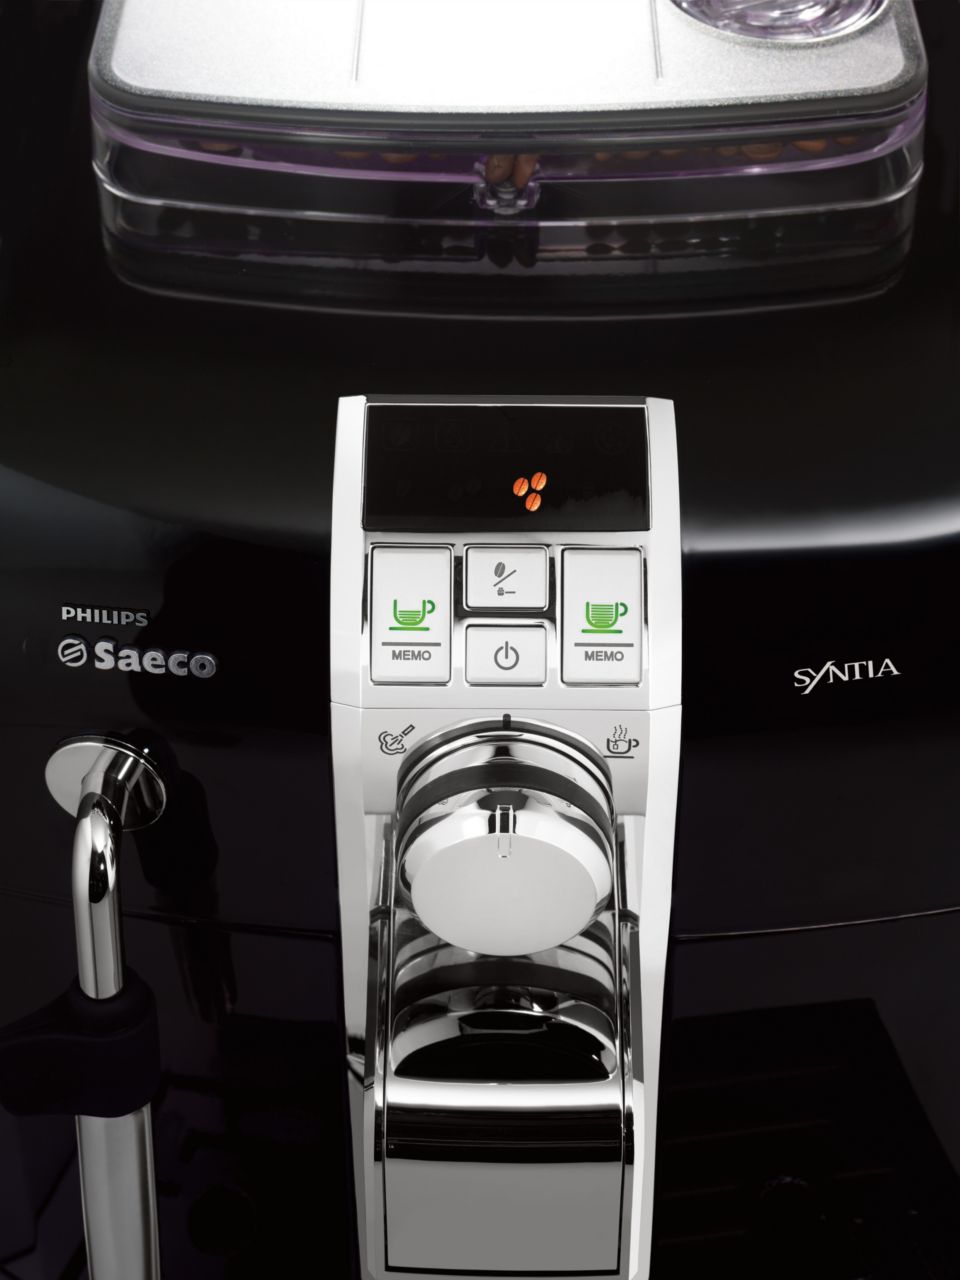 Syntia Cafetera espresso superautomática HD8833/47